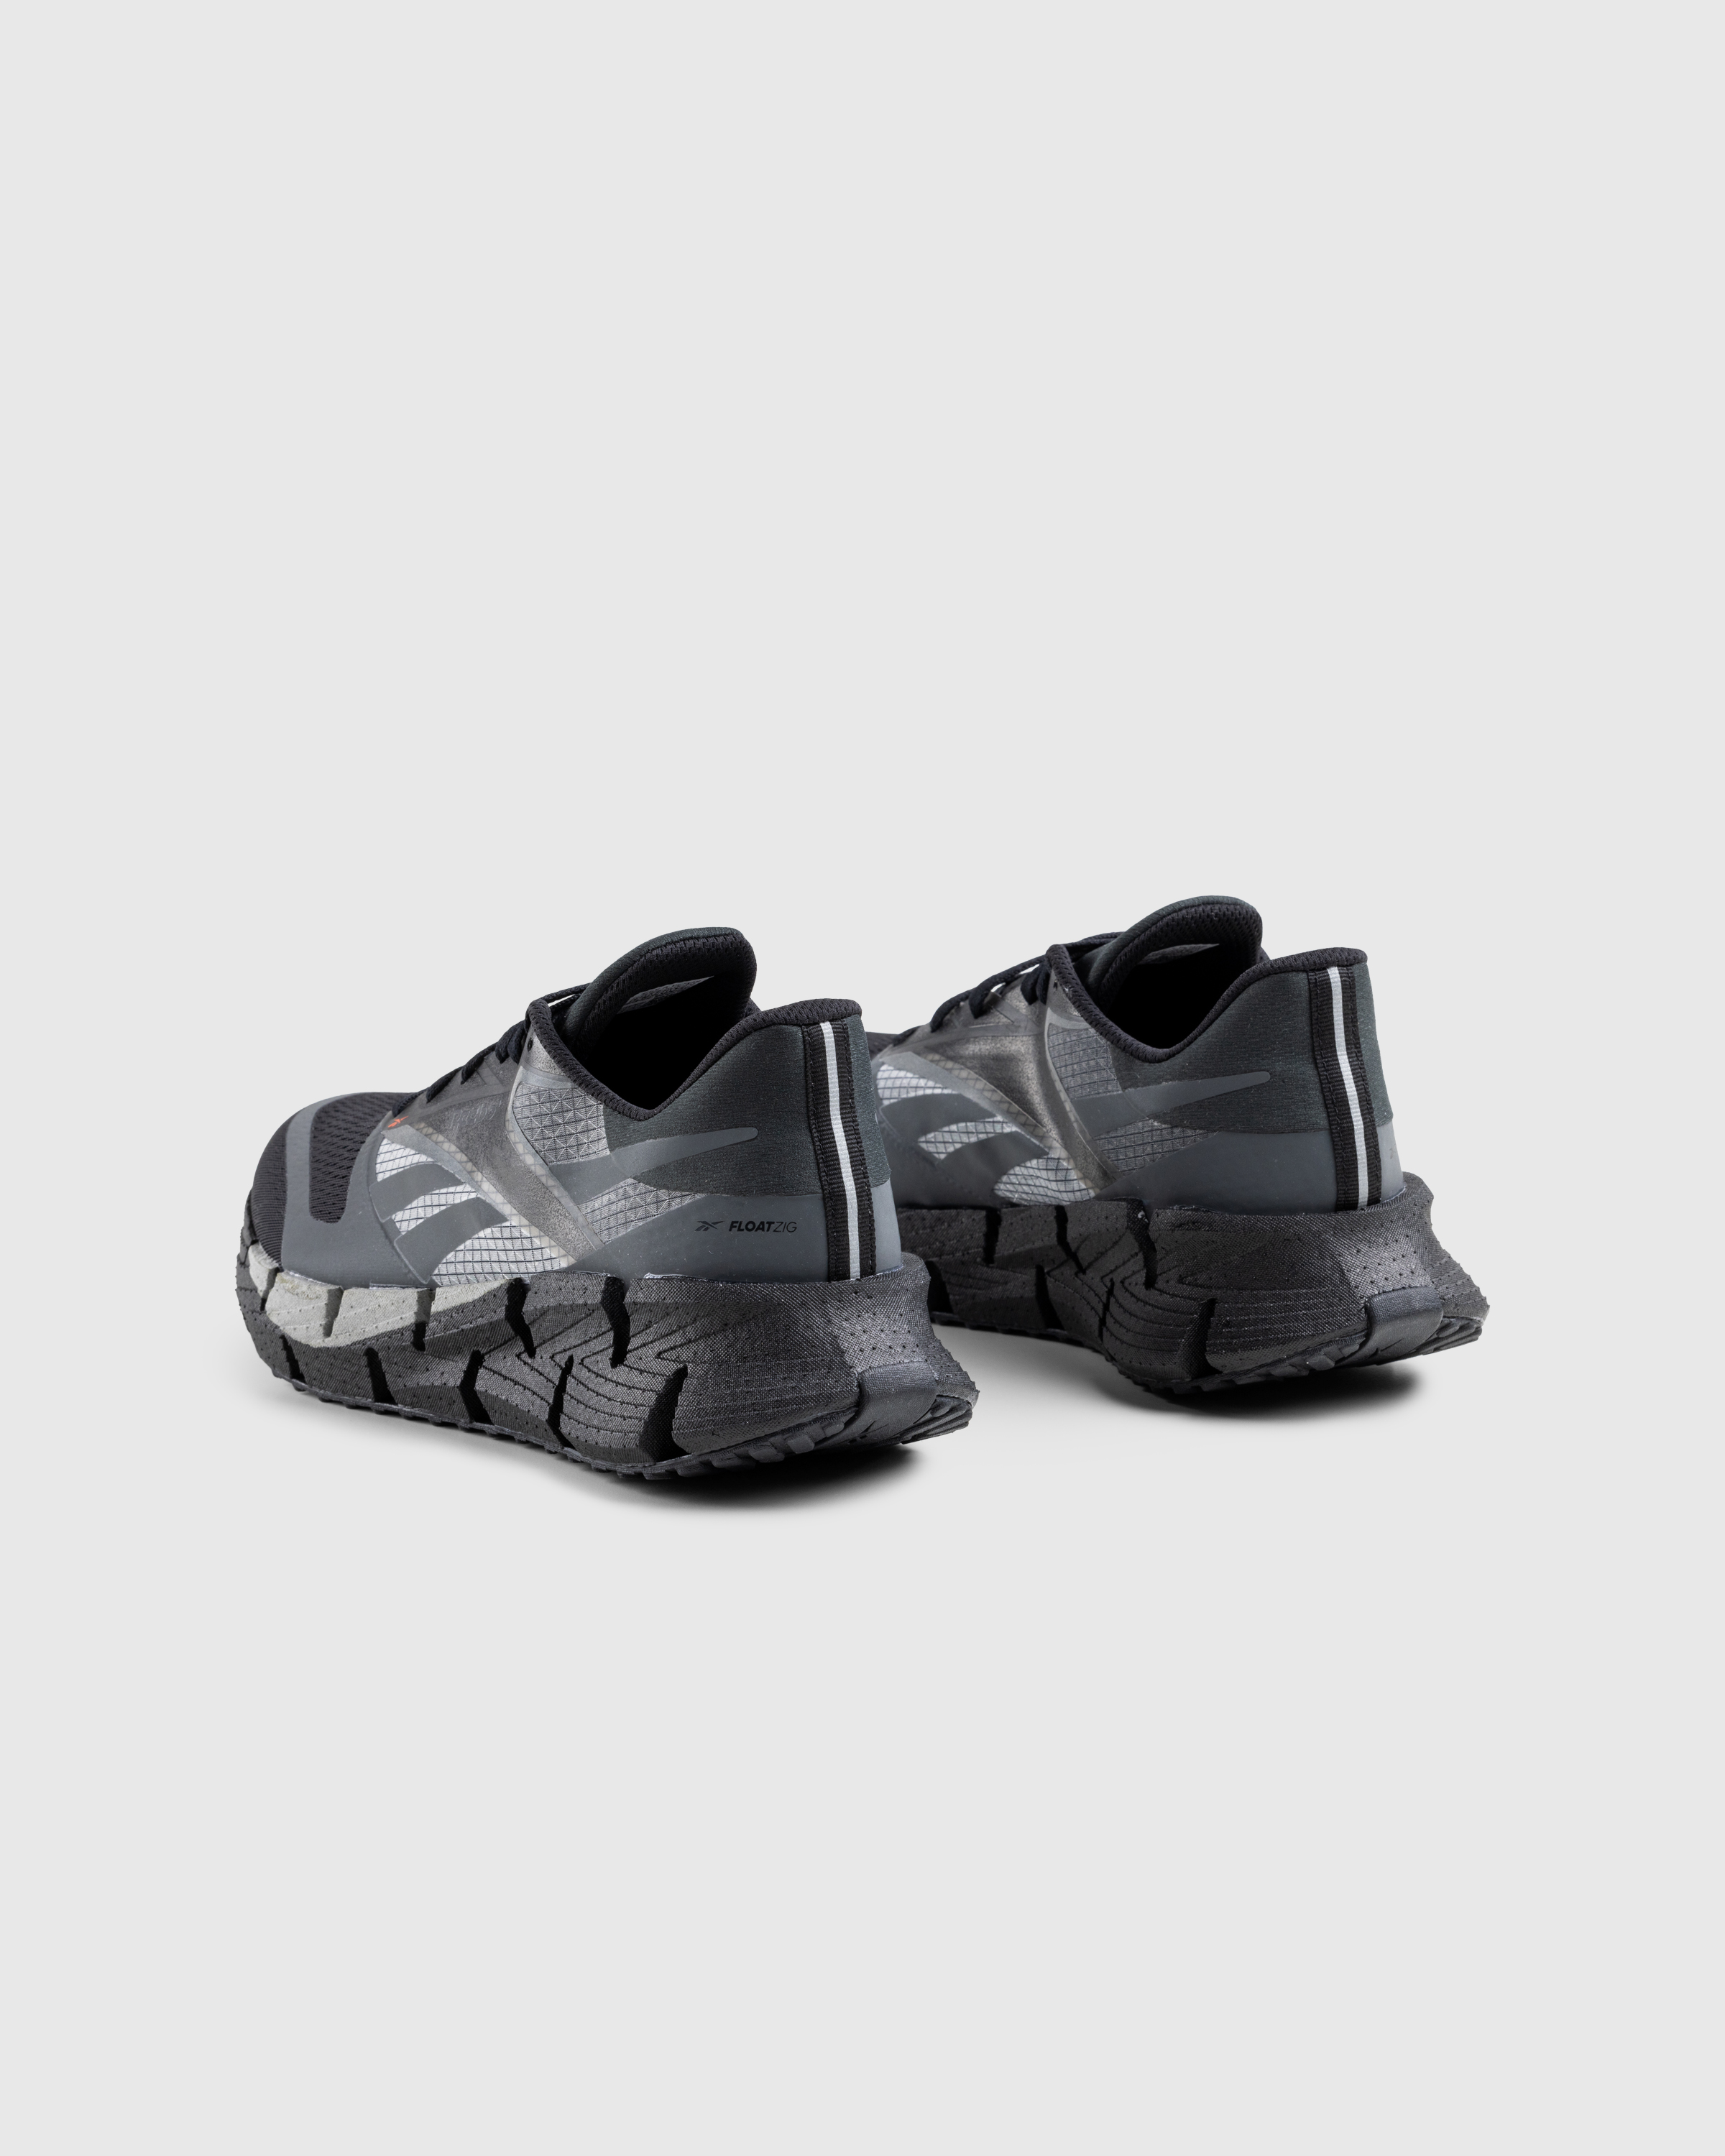 Reebok – FloatZig Black - Low Top Sneakers - Black - Image 4